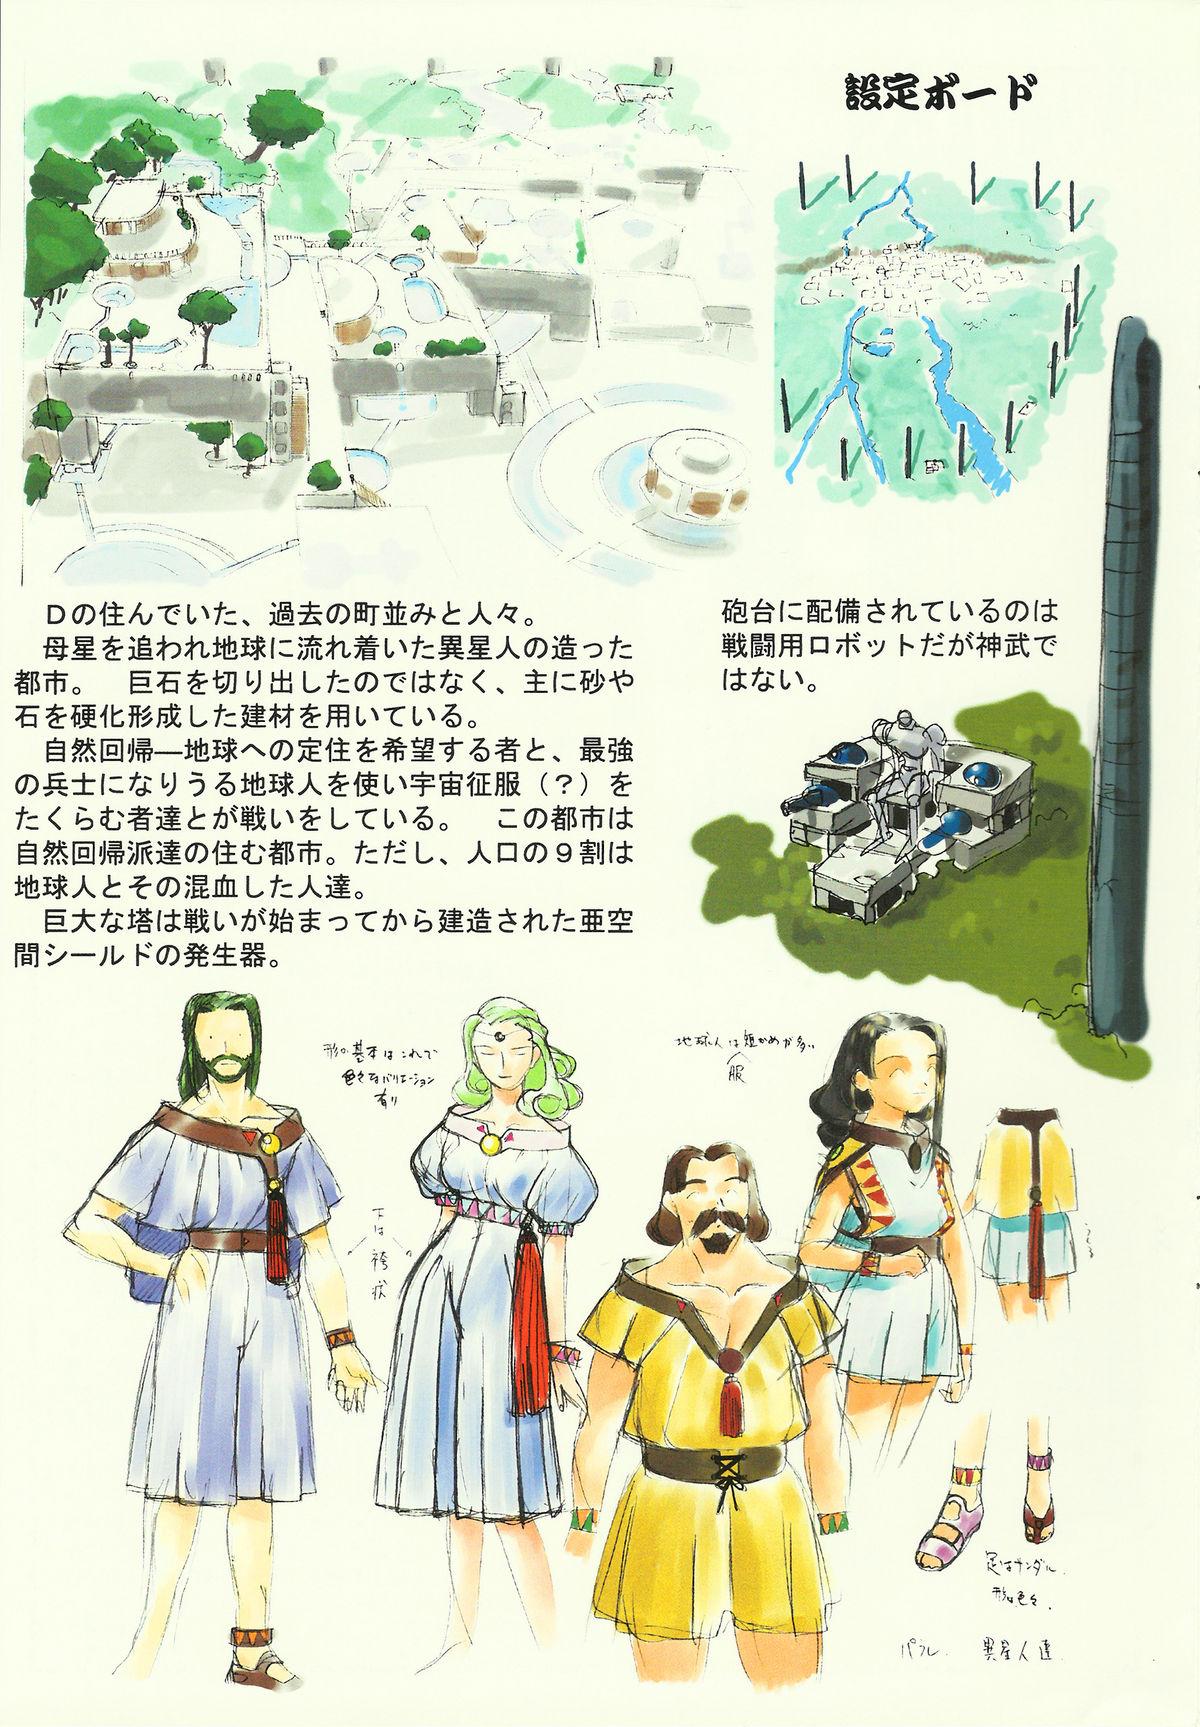 Caliente Omatsuri Zenjitsu no Yoru Heisei Ban 3 - Dual parallel trouble adventure Spaceship agga ruter Wanking - Page 9